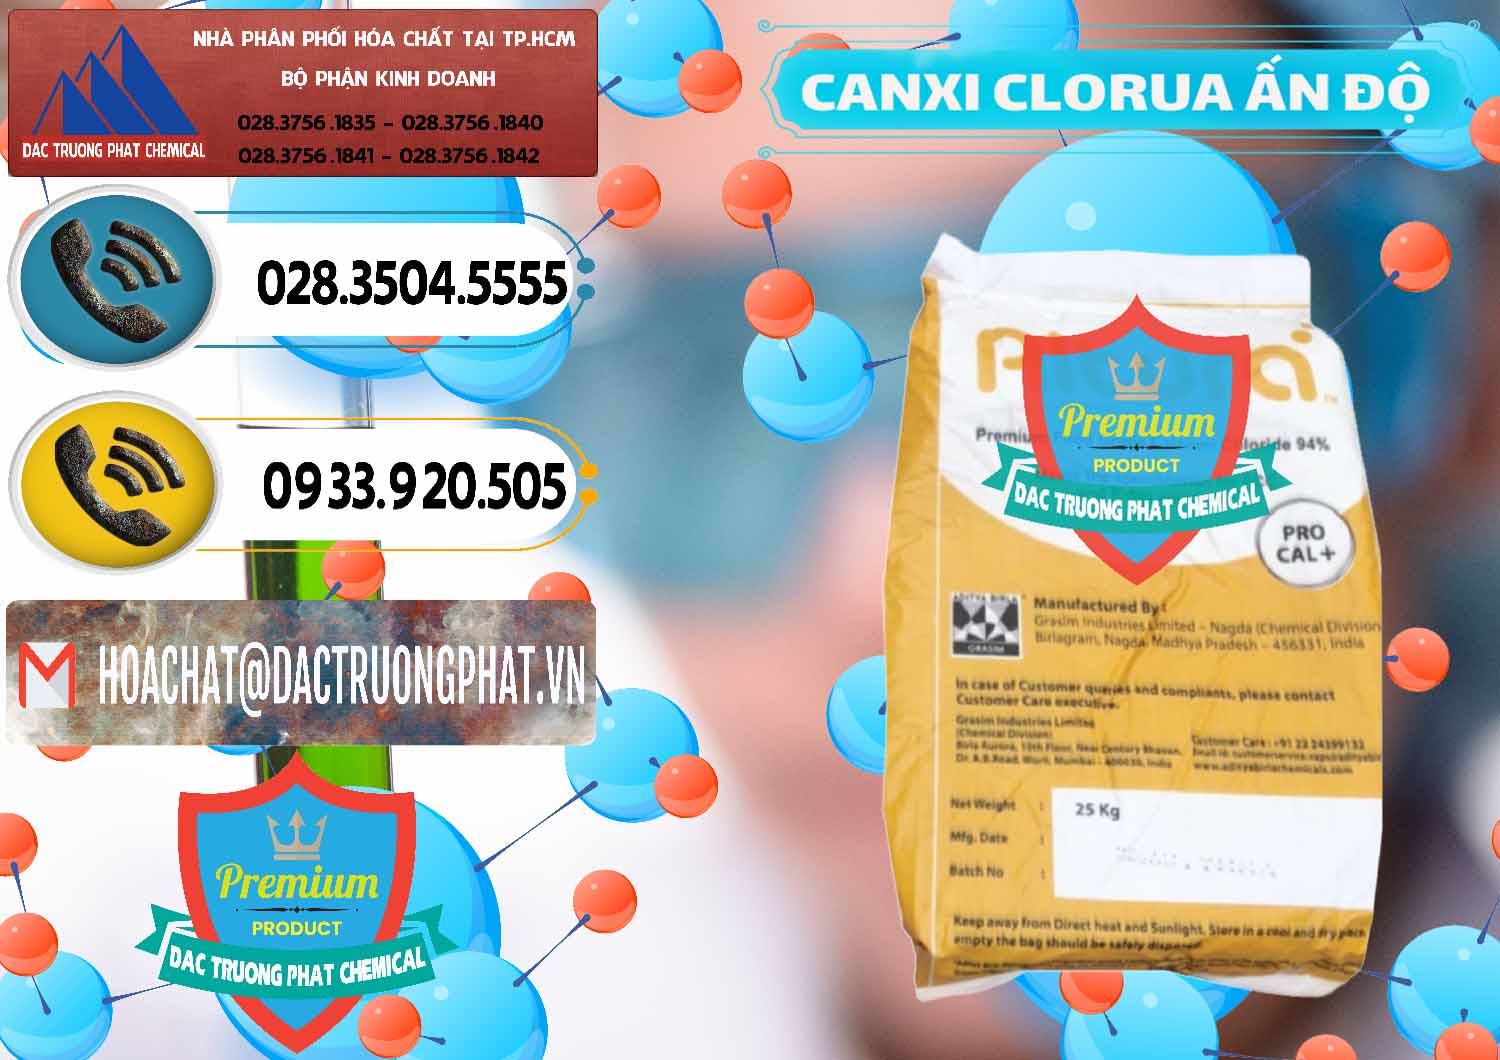 Bán _ phân phối CaCl2 – Canxi Clorua Food Grade Altura Aditya Birla Grasim Ấn Độ India - 0436 - Công ty cung cấp _ phân phối hóa chất tại TP.HCM - hoachatdetnhuom.vn